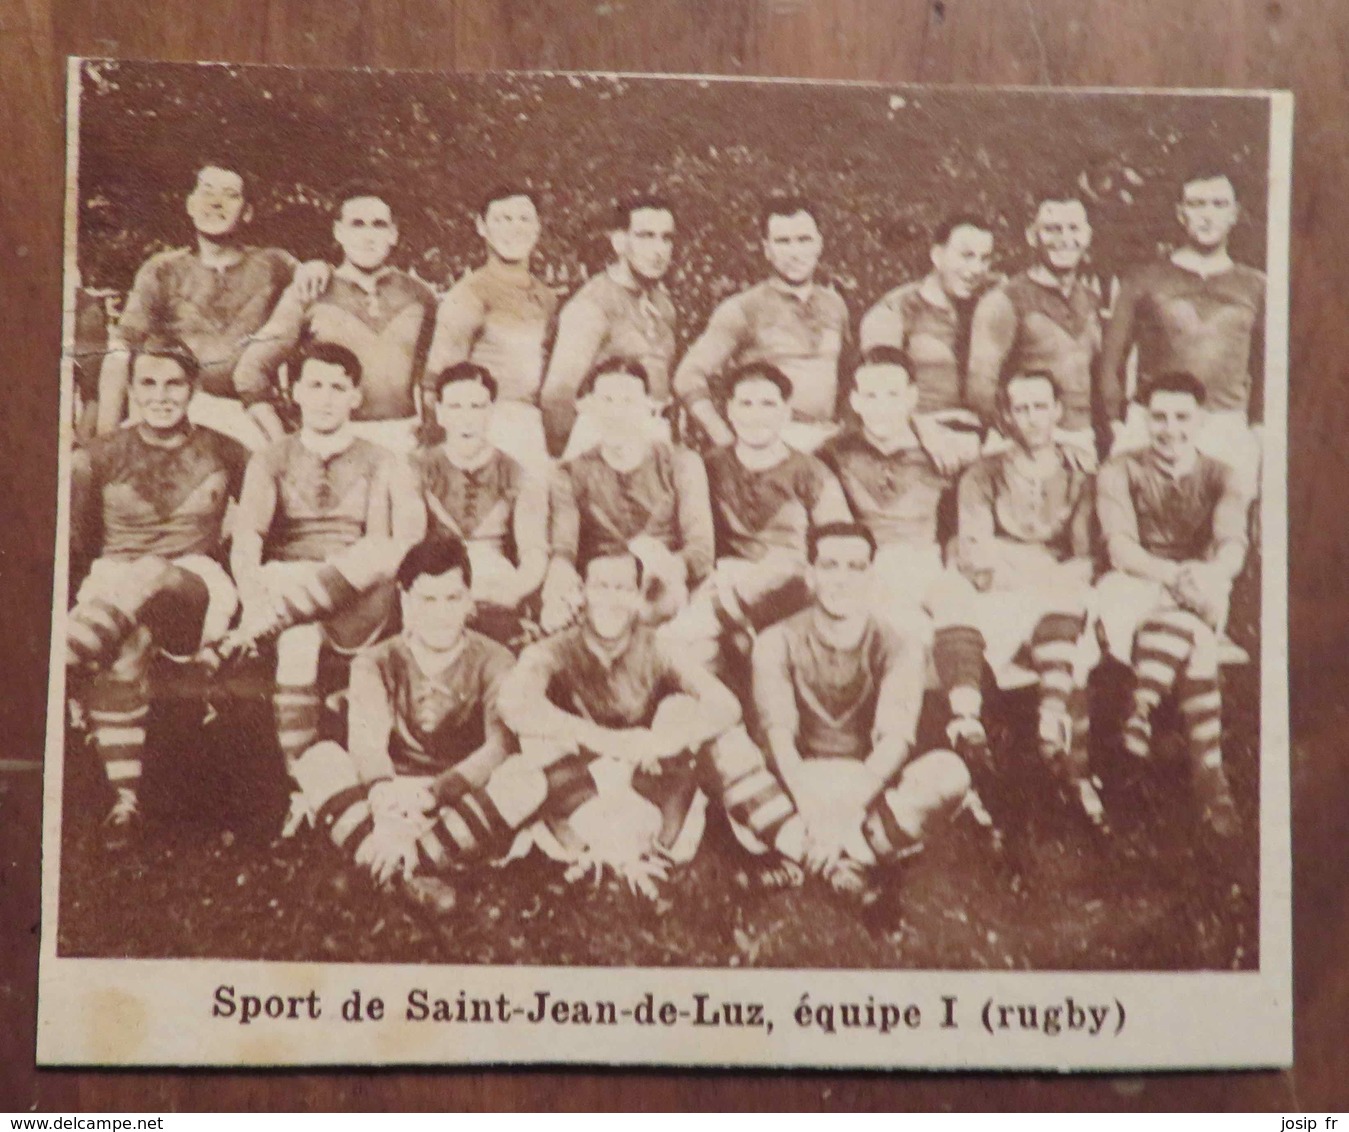 SAINT-JEAN-DE-LUZ (PAYS BASQUE): SPORT DE SAINT-JEAN DE LUZ (RUGBY) (PHOTO DE JOURNAL: 11/1931) - Baskenland